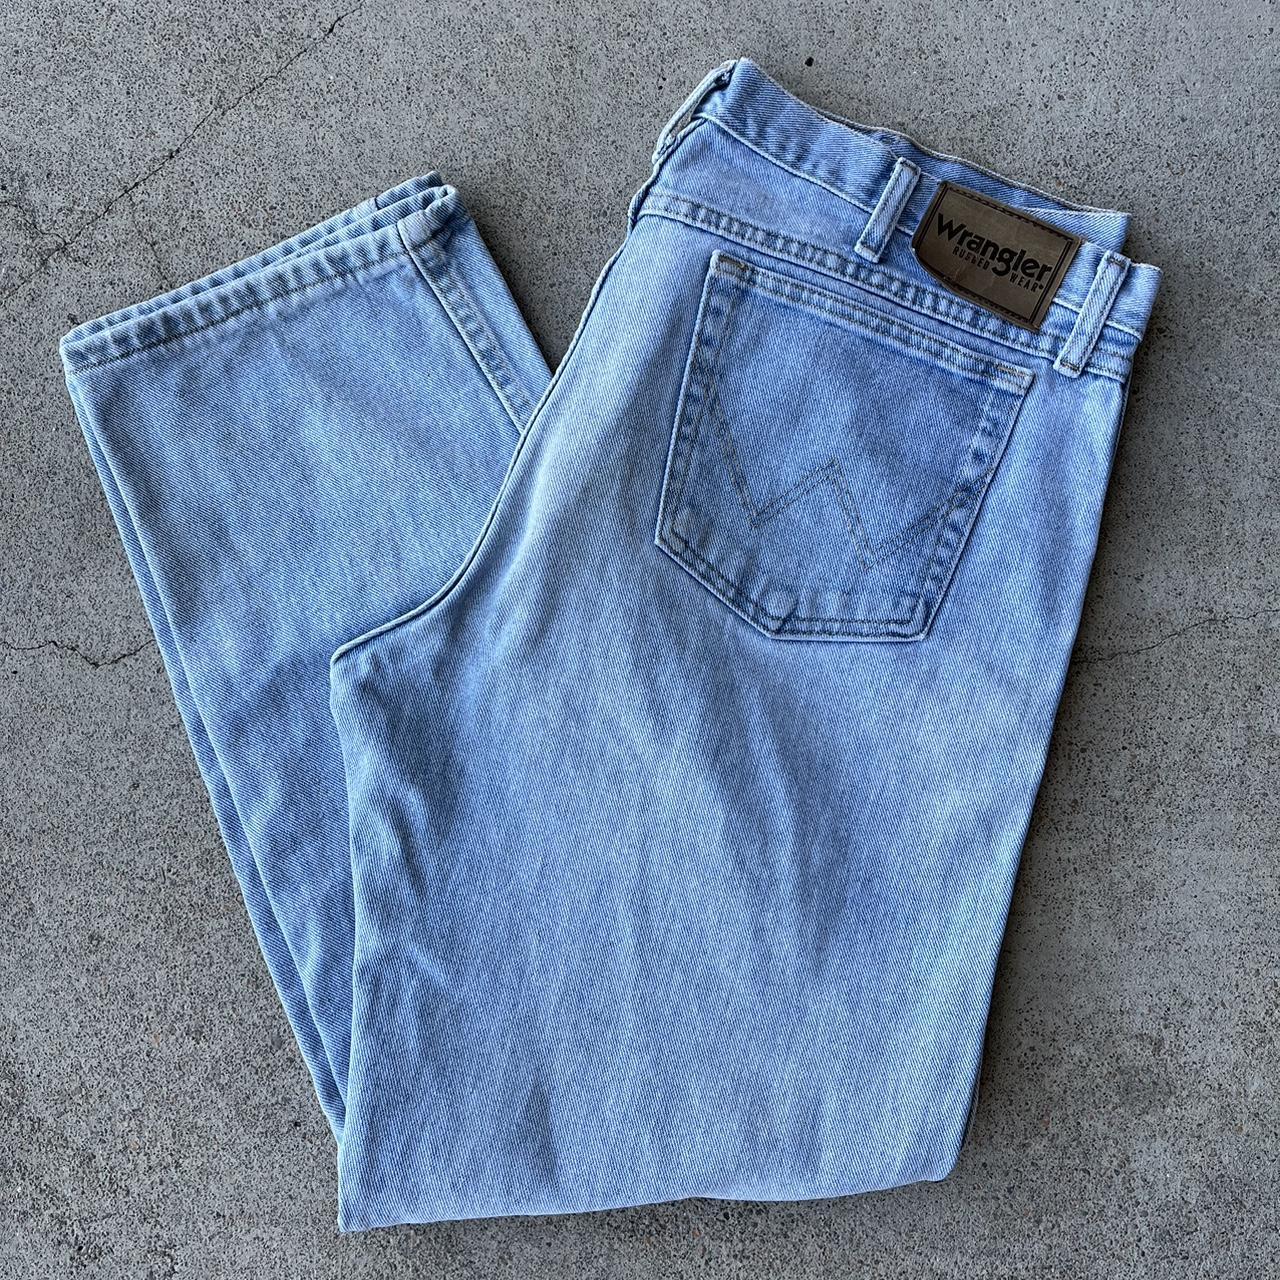 Wrangler Rugged Wear Jeans - light washed - 1... - Depop